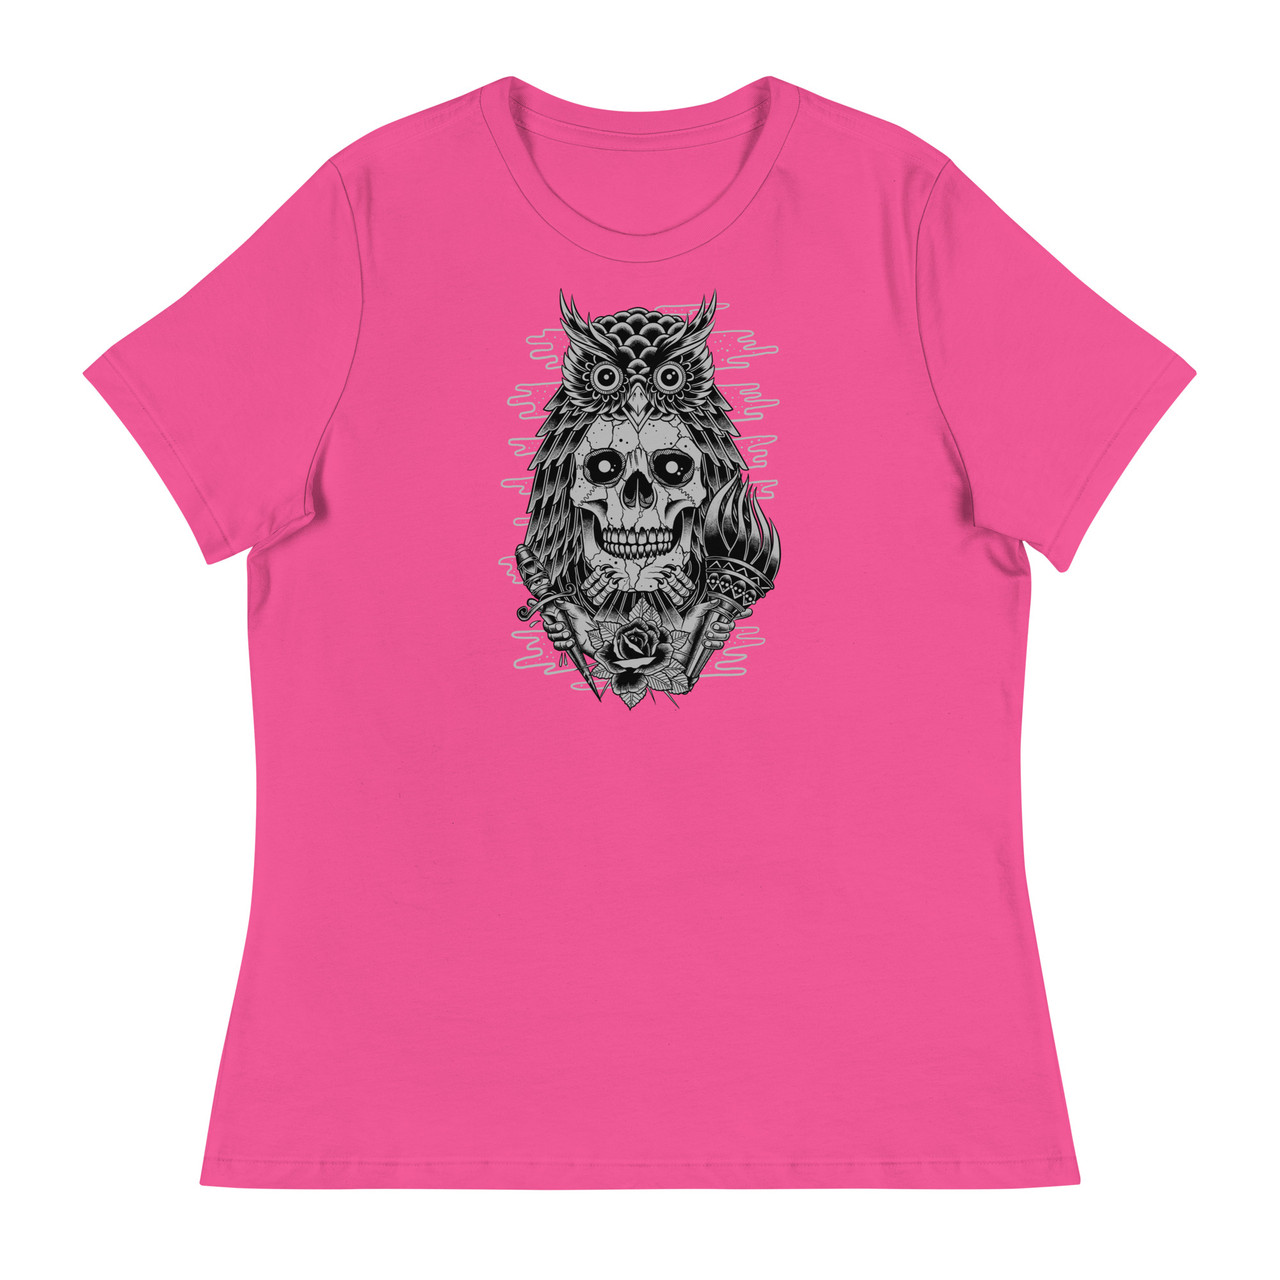 Owl Skull Women's Relaxed T-Shirt - Bella + Canvas 6400 